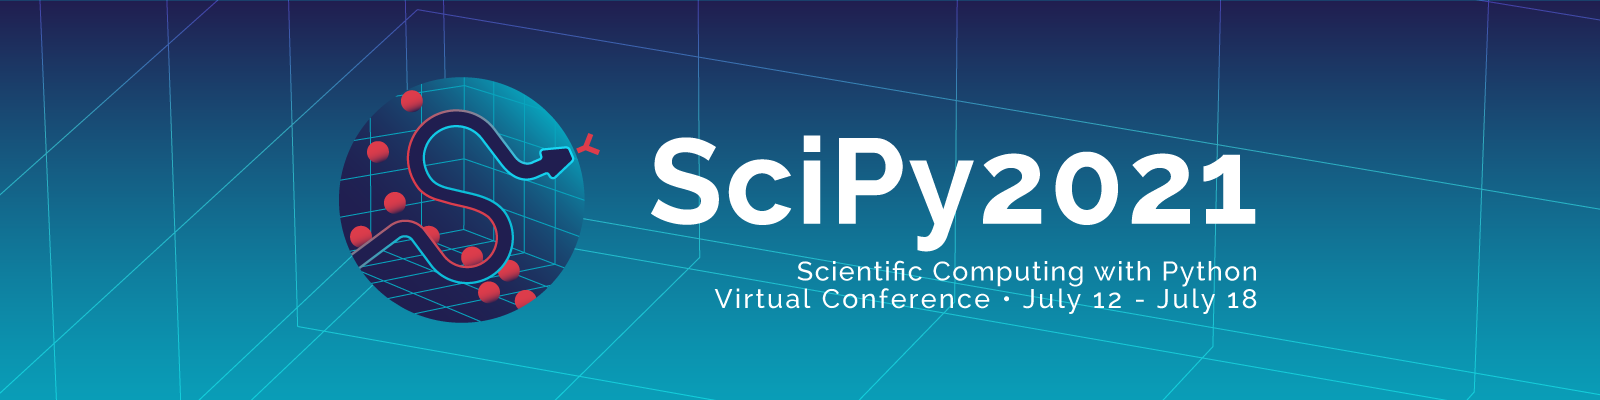 SciPy 2021